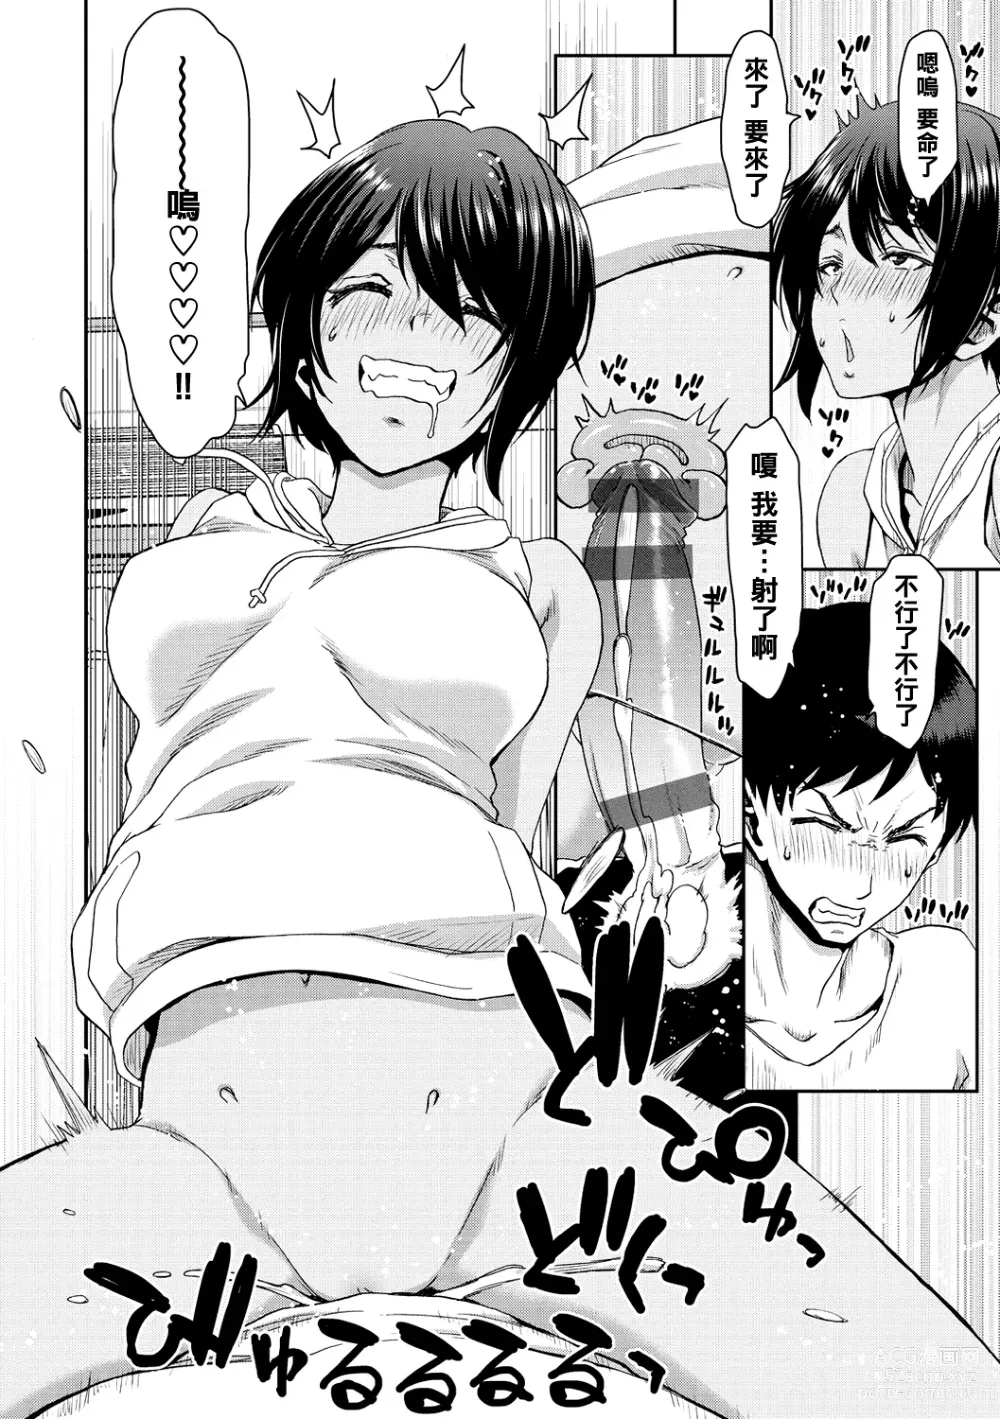 Page 140 of manga Shiyokka Hametsu SEX